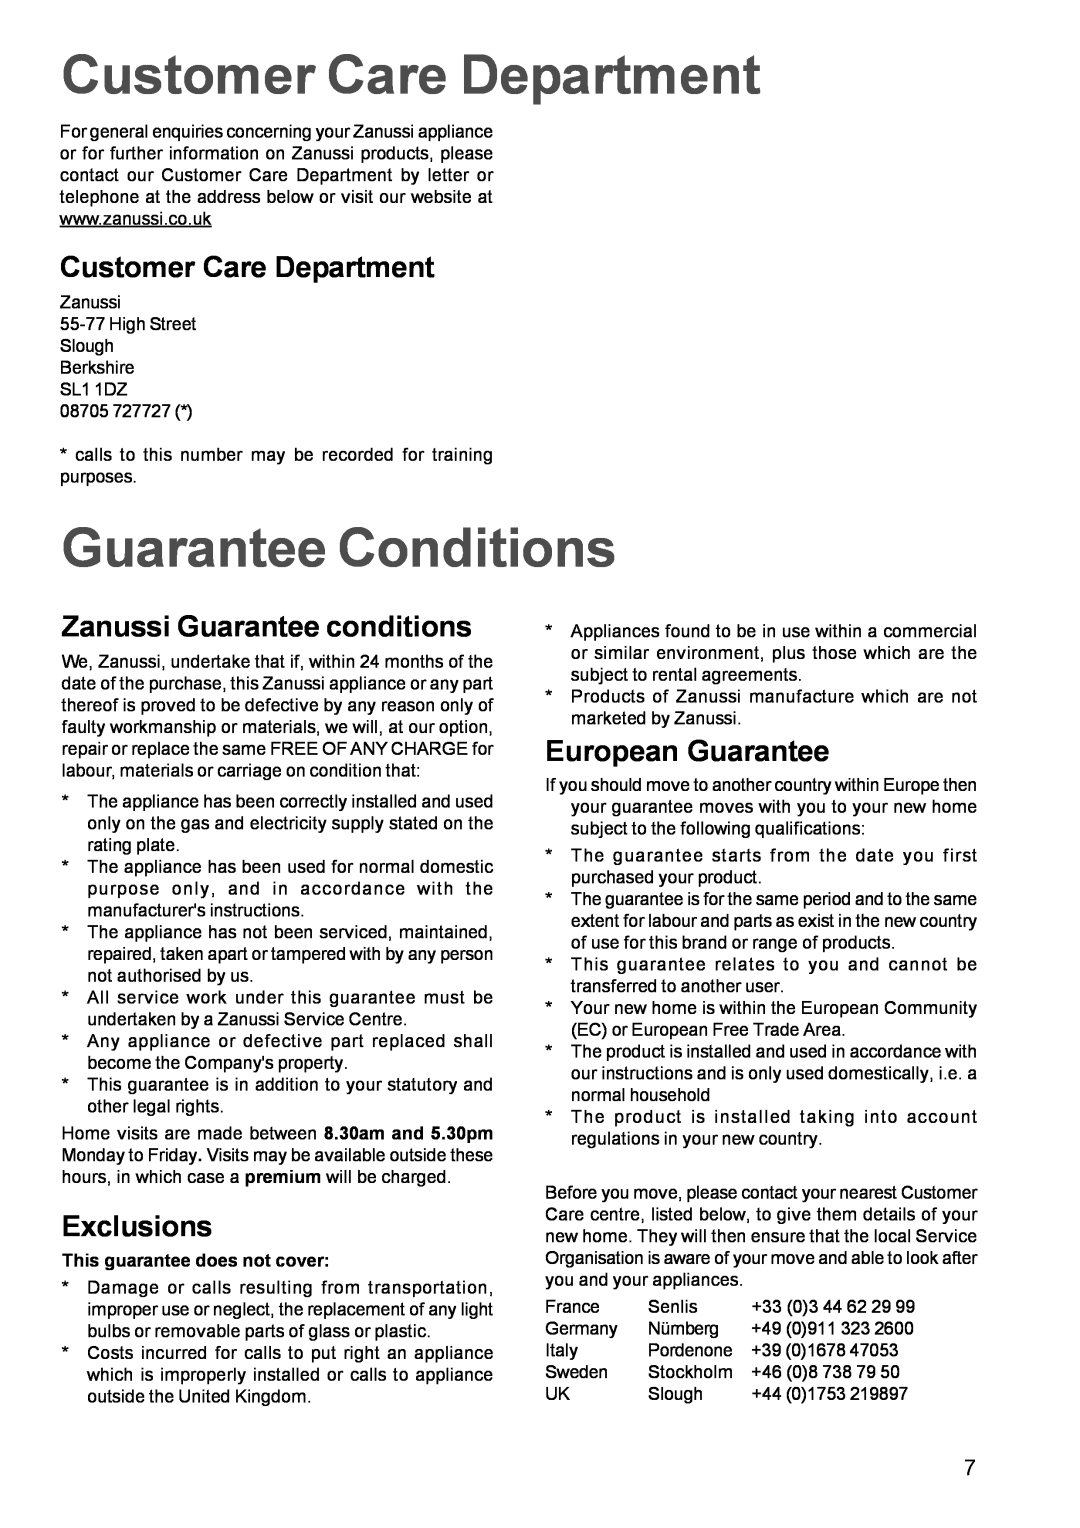 Zanussi ZEL 63 manual Customer Care Department, Guarantee Conditions, Zanussi Guarantee conditions, Exclusions 